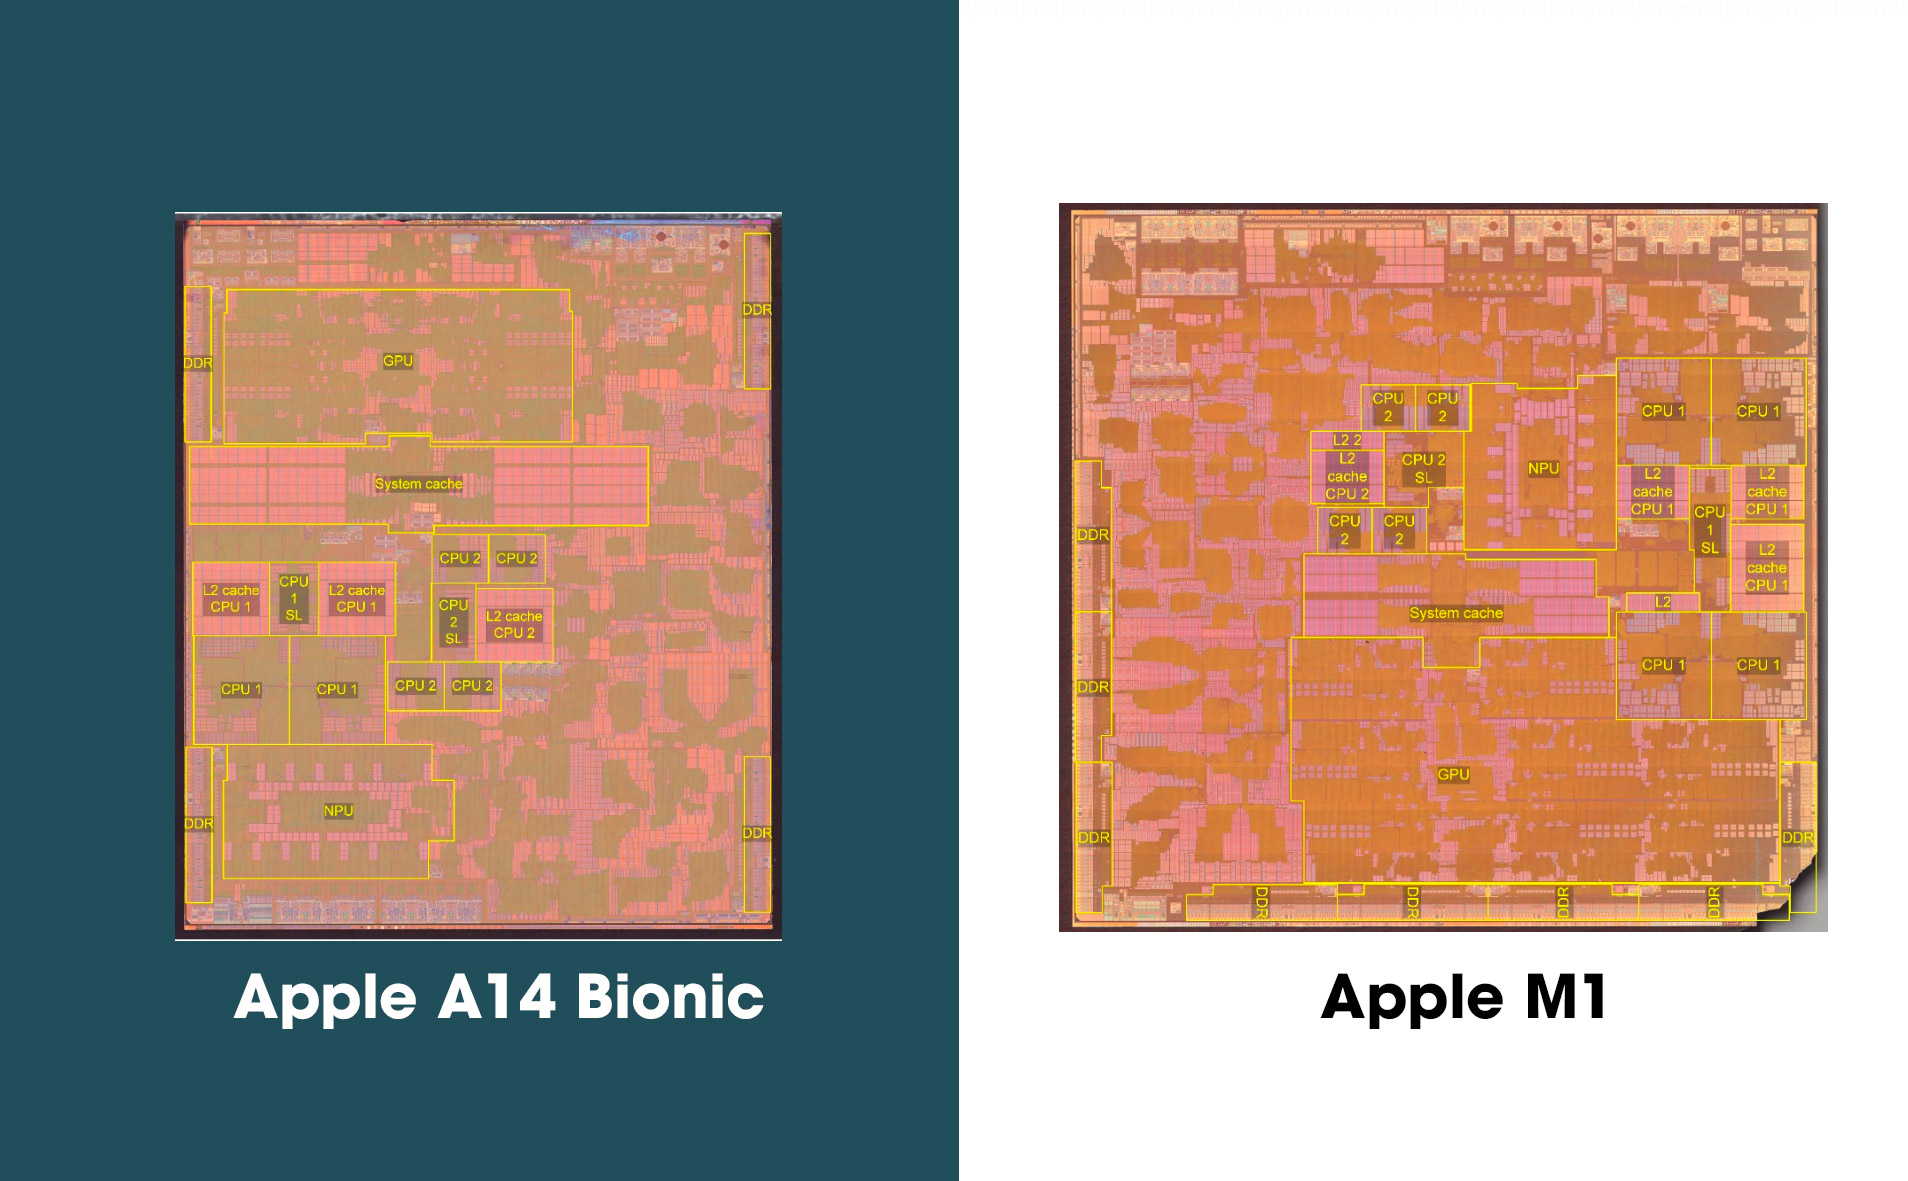 Apple M1 vs. Apple A14 Bionic: diện tích lớn hơn, nhân CPU giống nhau nhưng gấp 2 số lượng